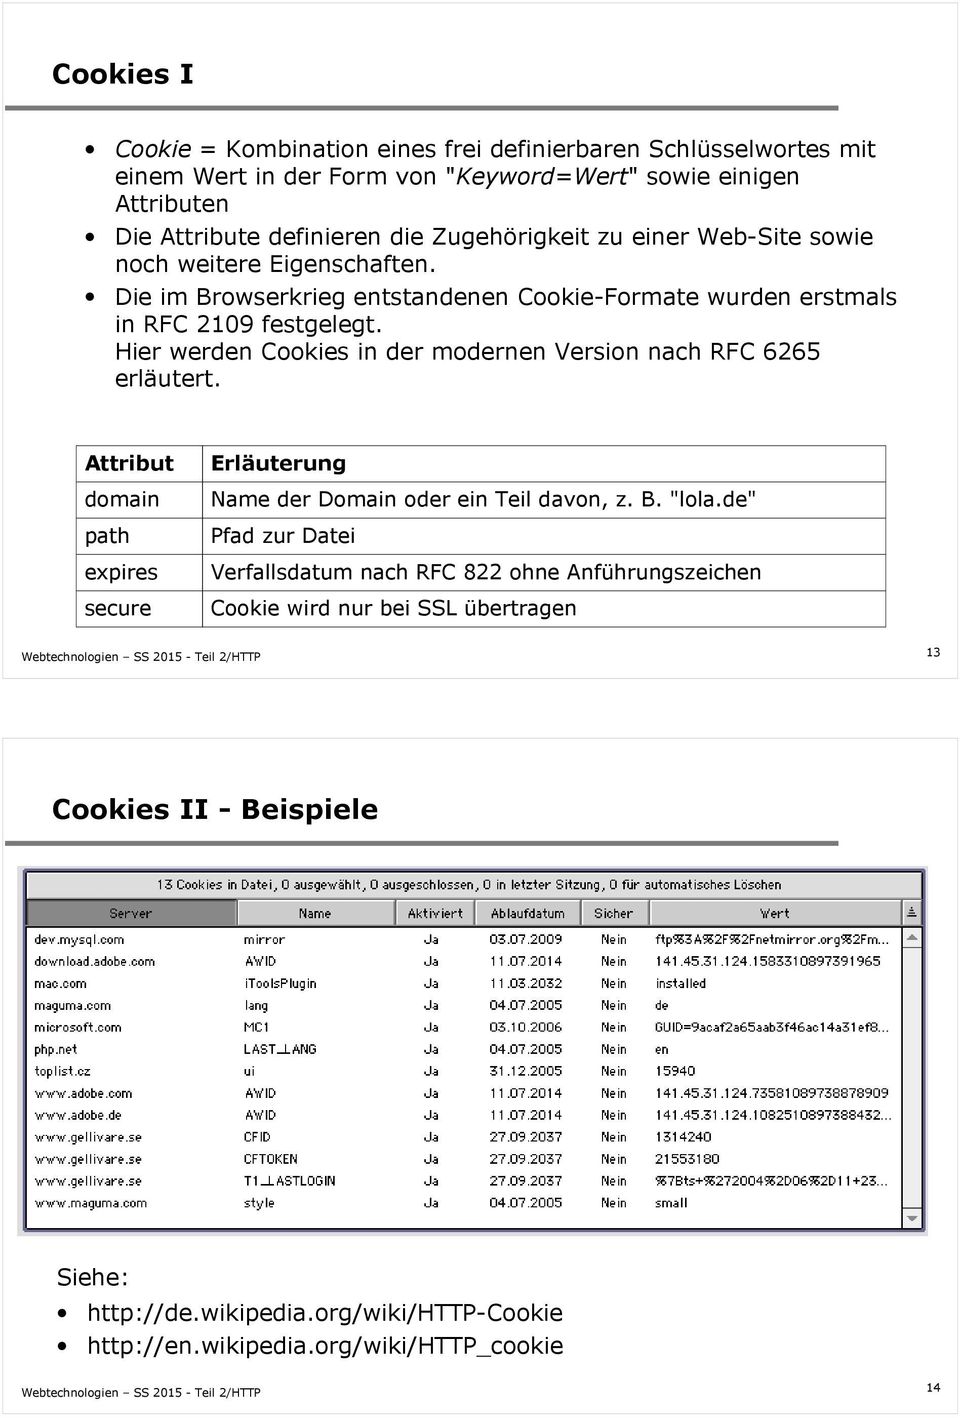 Hier werden Cookies in der modernen Version nach RFC 6265 erläutert. Attribut domain path expires secure Erläuterung Name der Domain oder ein Teil davon, z. B. "lola.